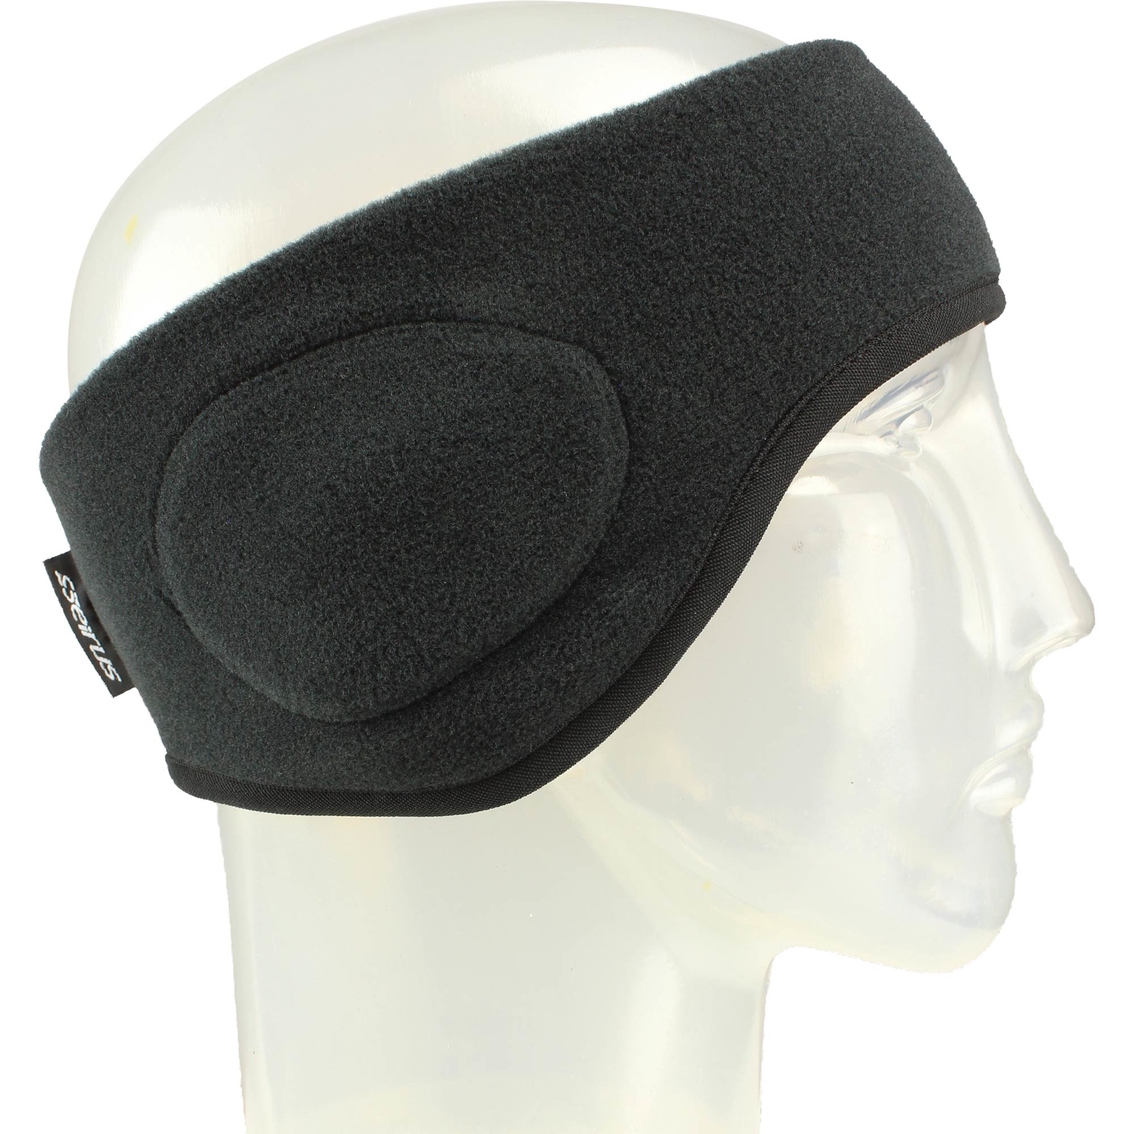 Seirus Innovation Neofleece Headband - Image 4 of 4